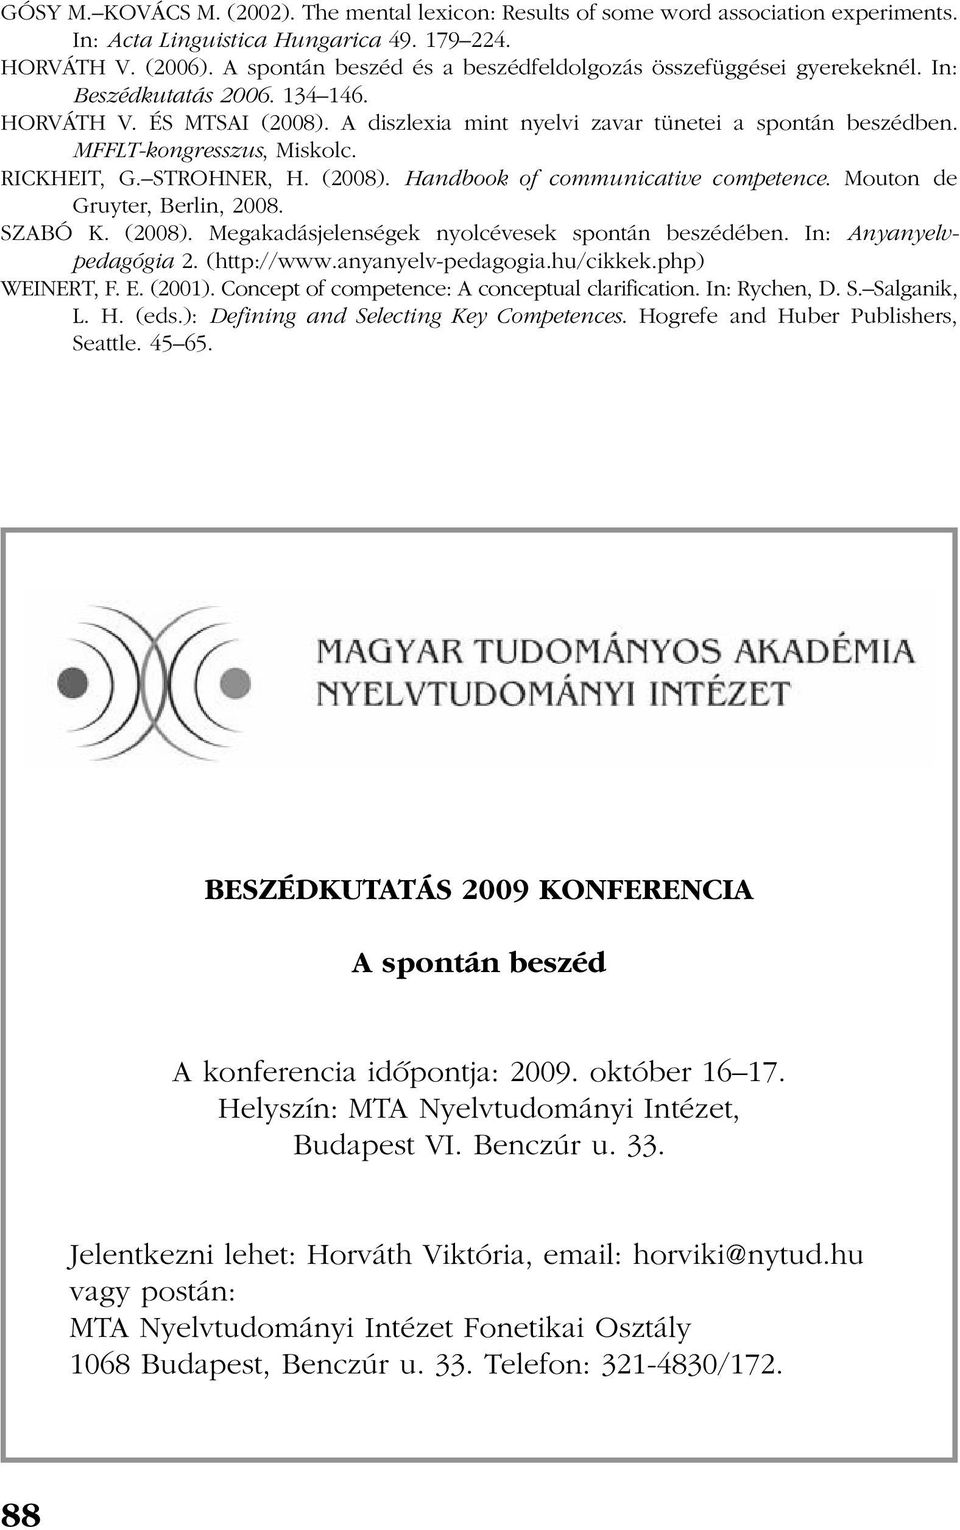 MFFLT-kongresszus, Miskolc. RICKHEIT, G. STROHNER, H. (2008). Handbook of communicative competence. Mouton de Gruyter, Berlin, 2008. SZABÓ K. (2008). Megakadásjelenségek nyolcévesek spontán beszédében.